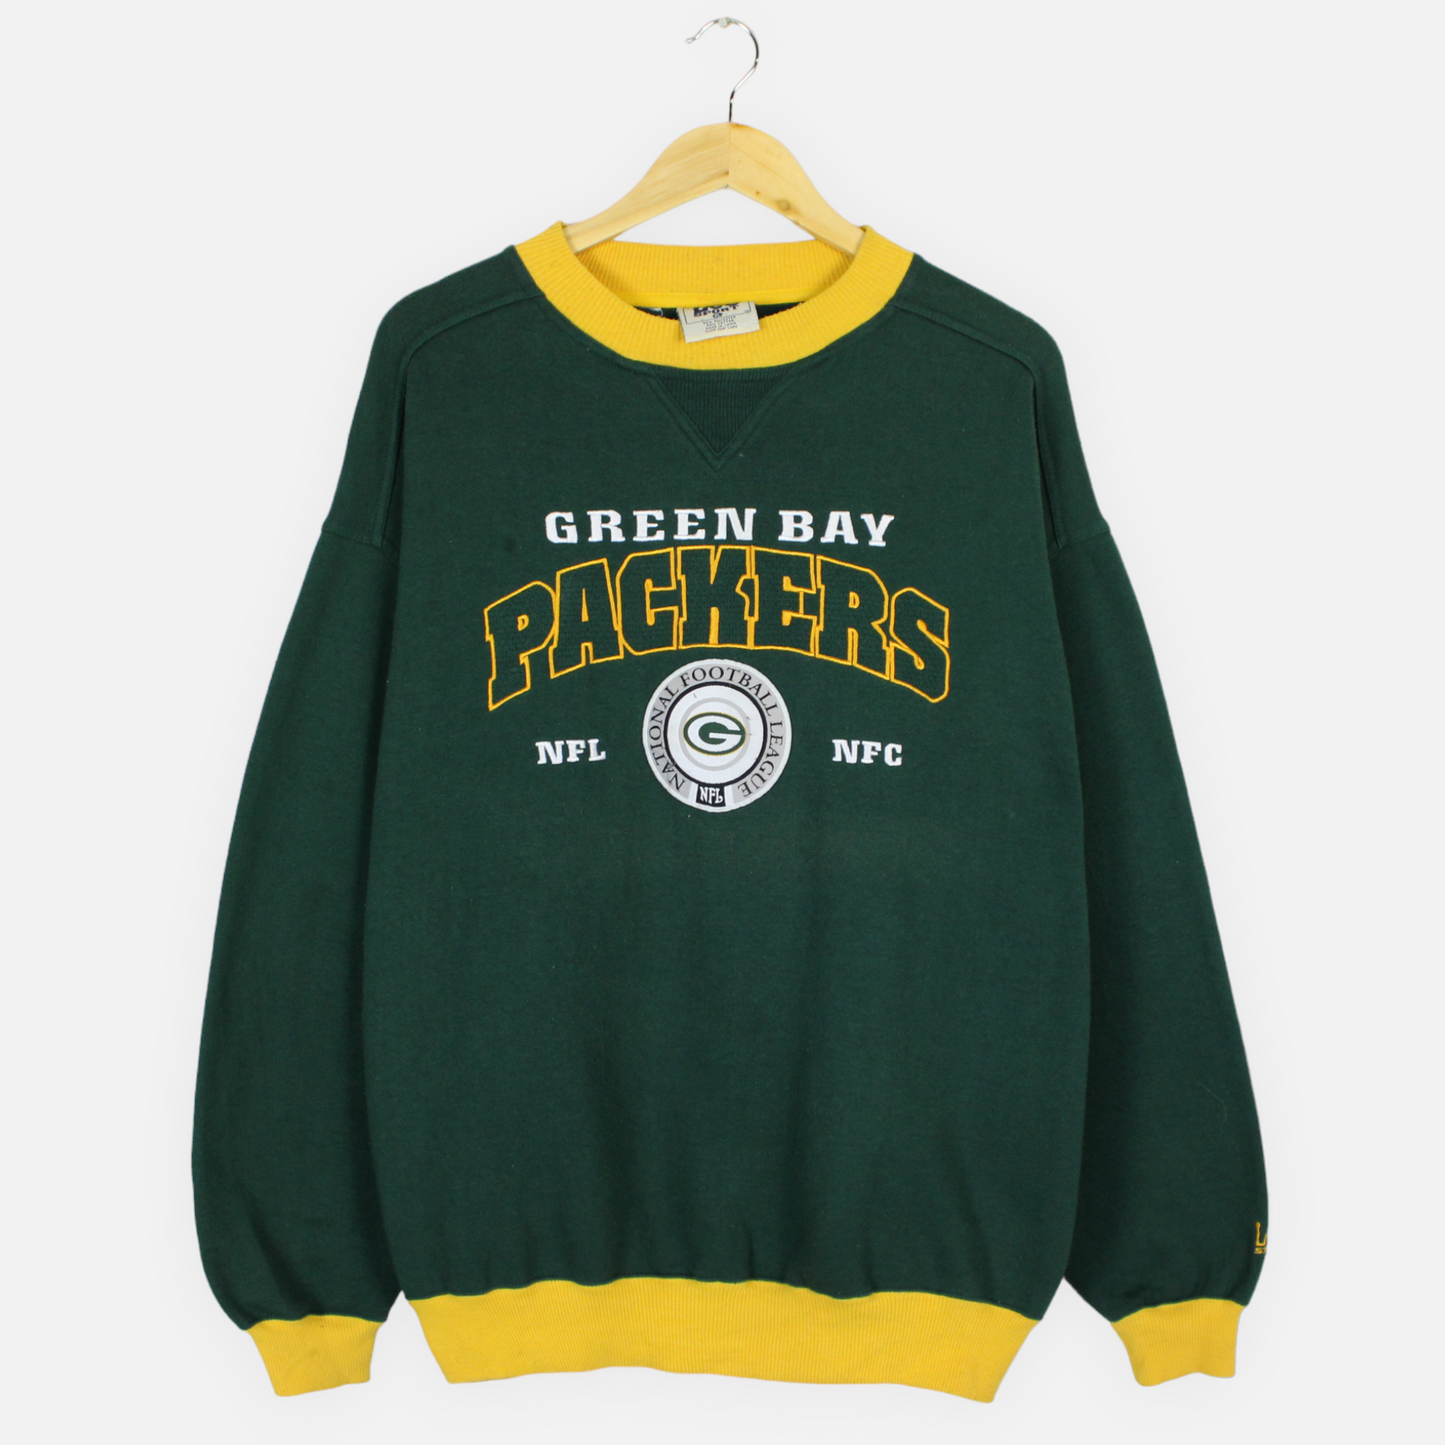 Vintage Green Bay Packers NFL Sweatshirt -XL